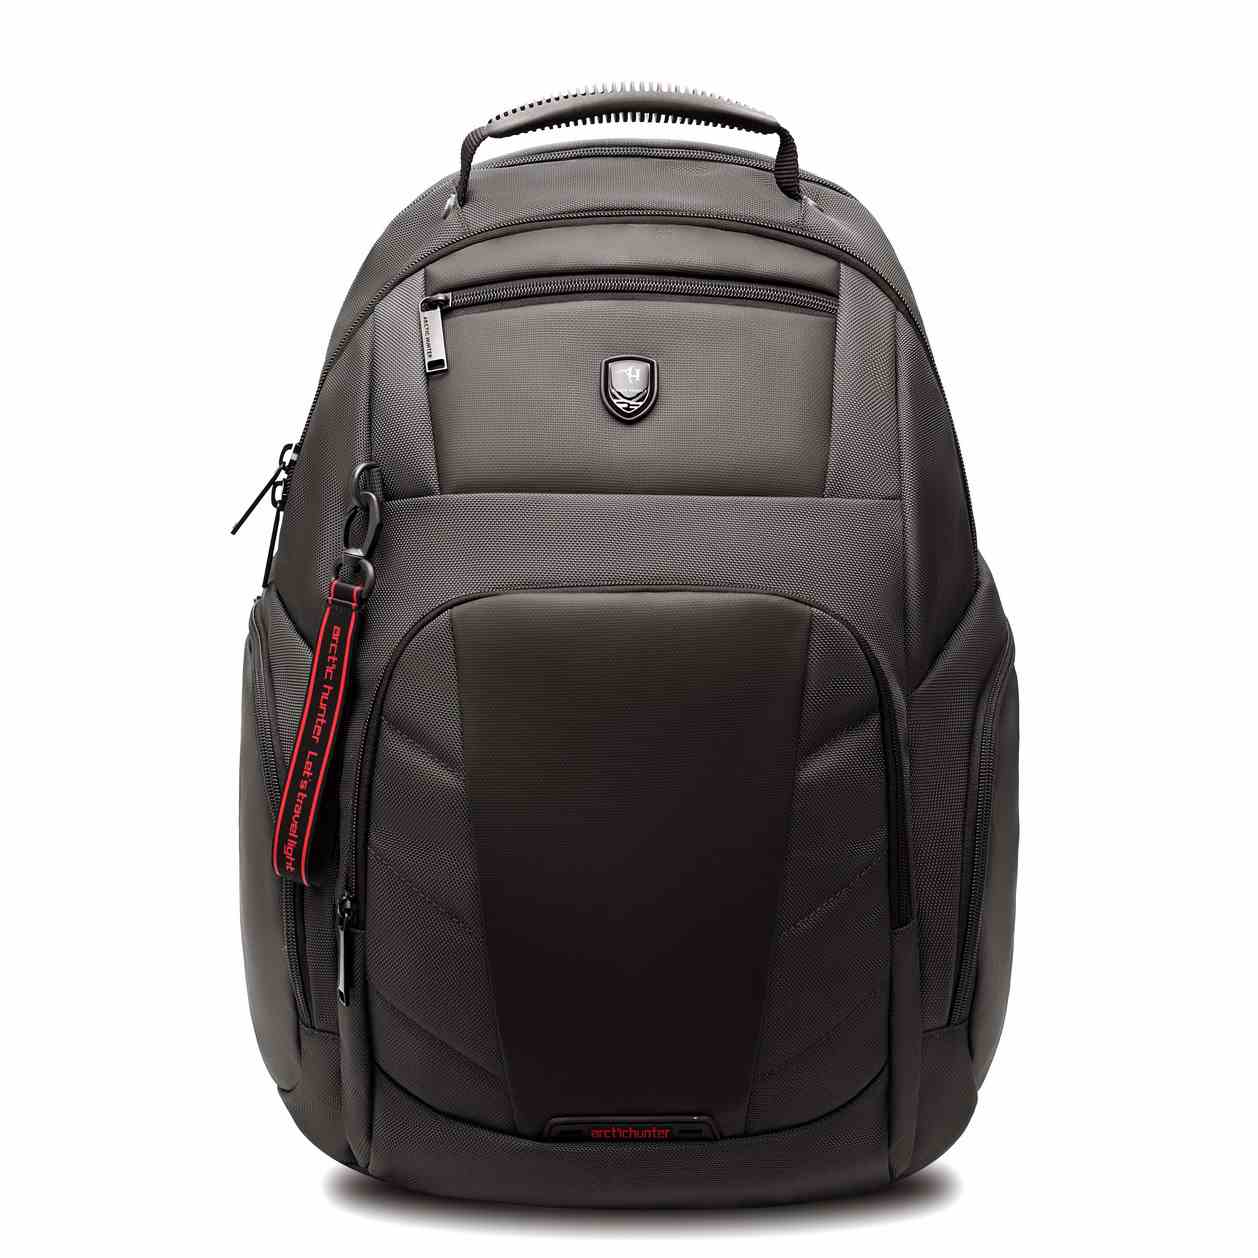 Best travel computer backpack for men